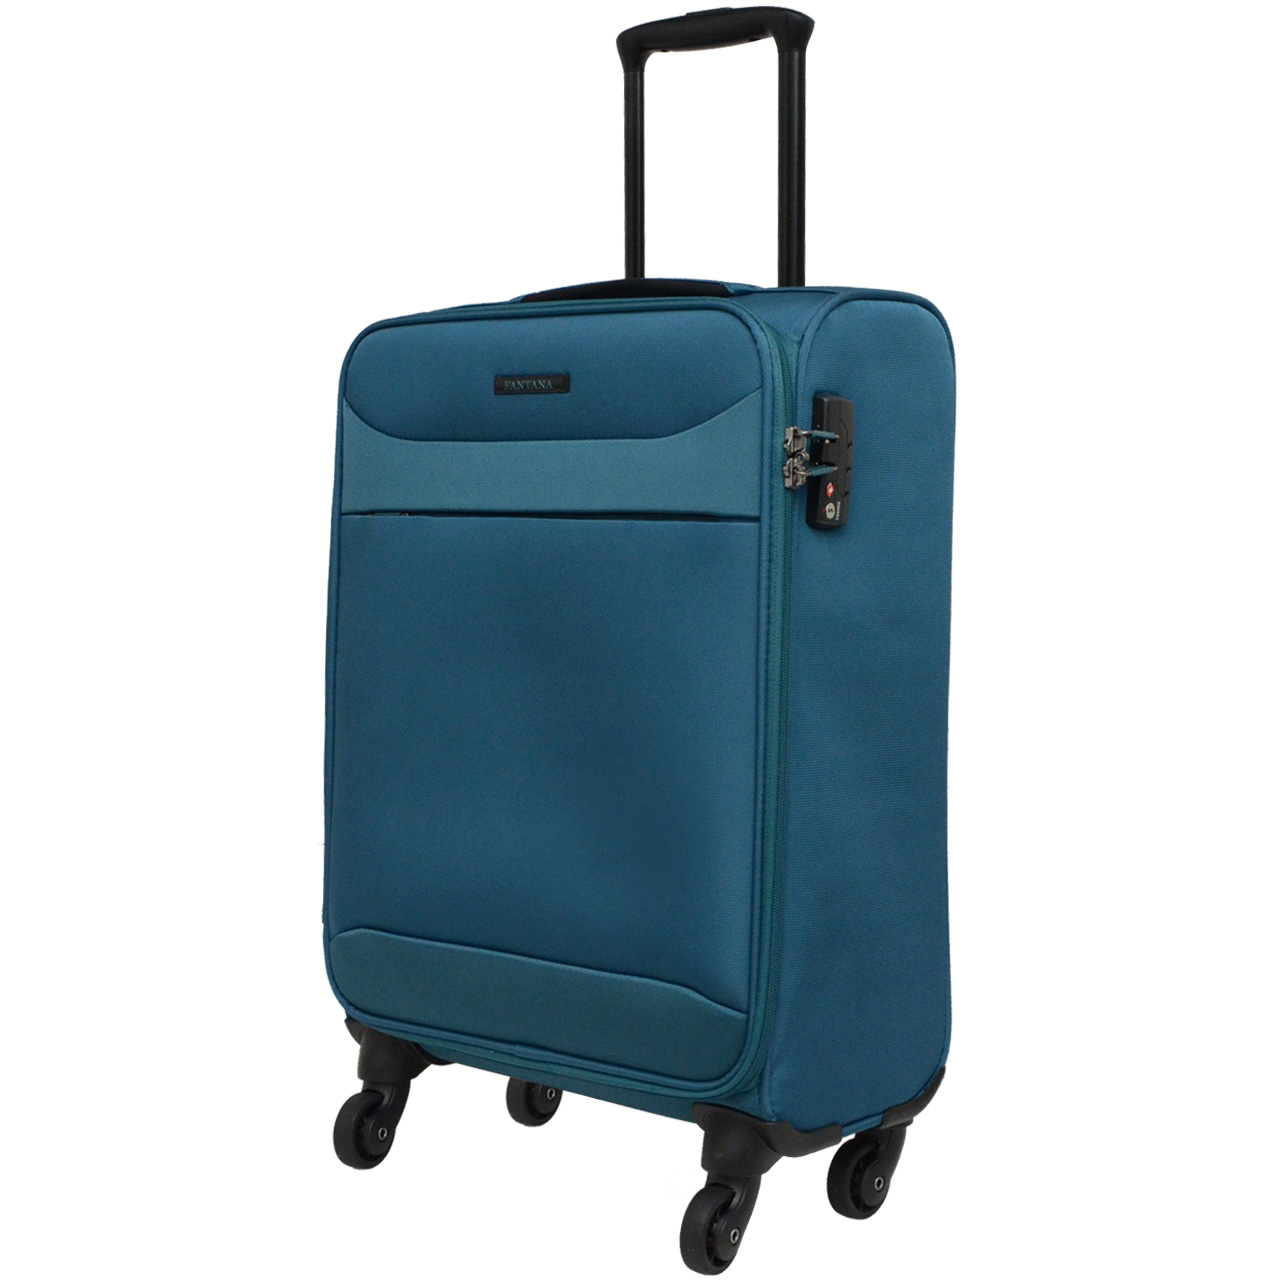 چمدان فانتانا مدل FA 700393 - 20